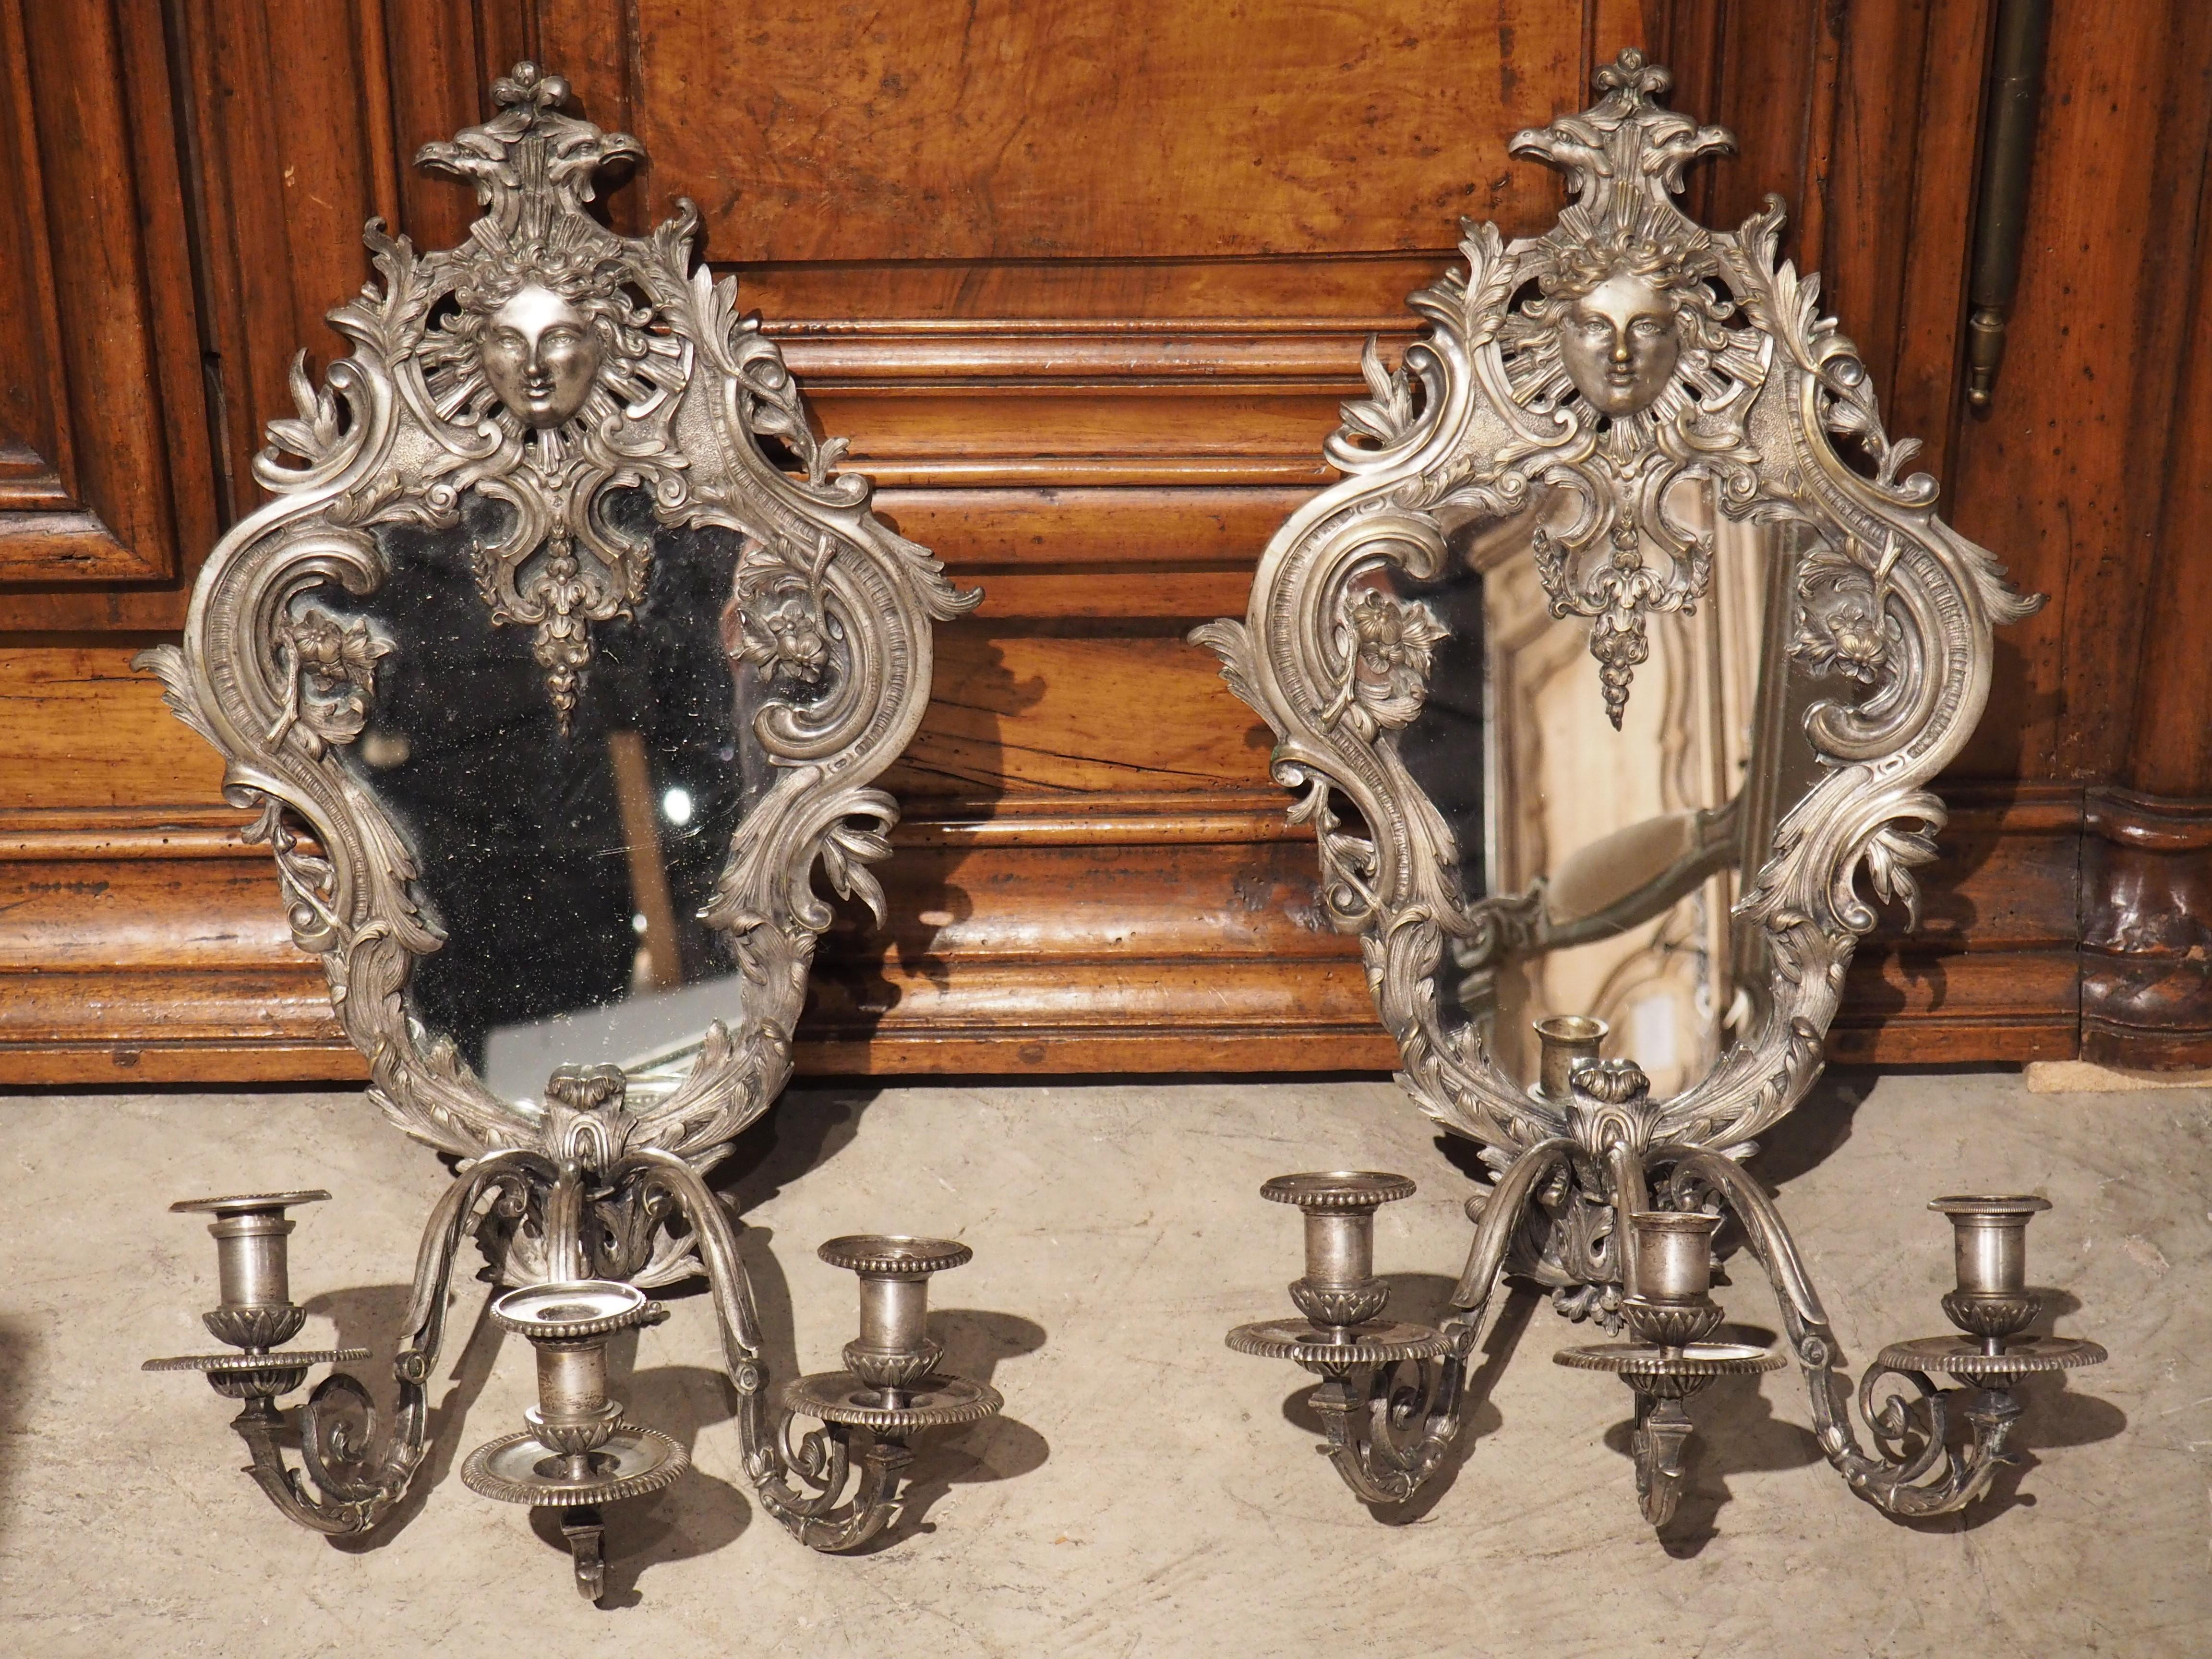 Möbel aus der Zeit Napoleons III. sind in der Regel sehr vielseitig, da sie Elemente aus vorangegangenen Stilen enthalten, so dass diese 